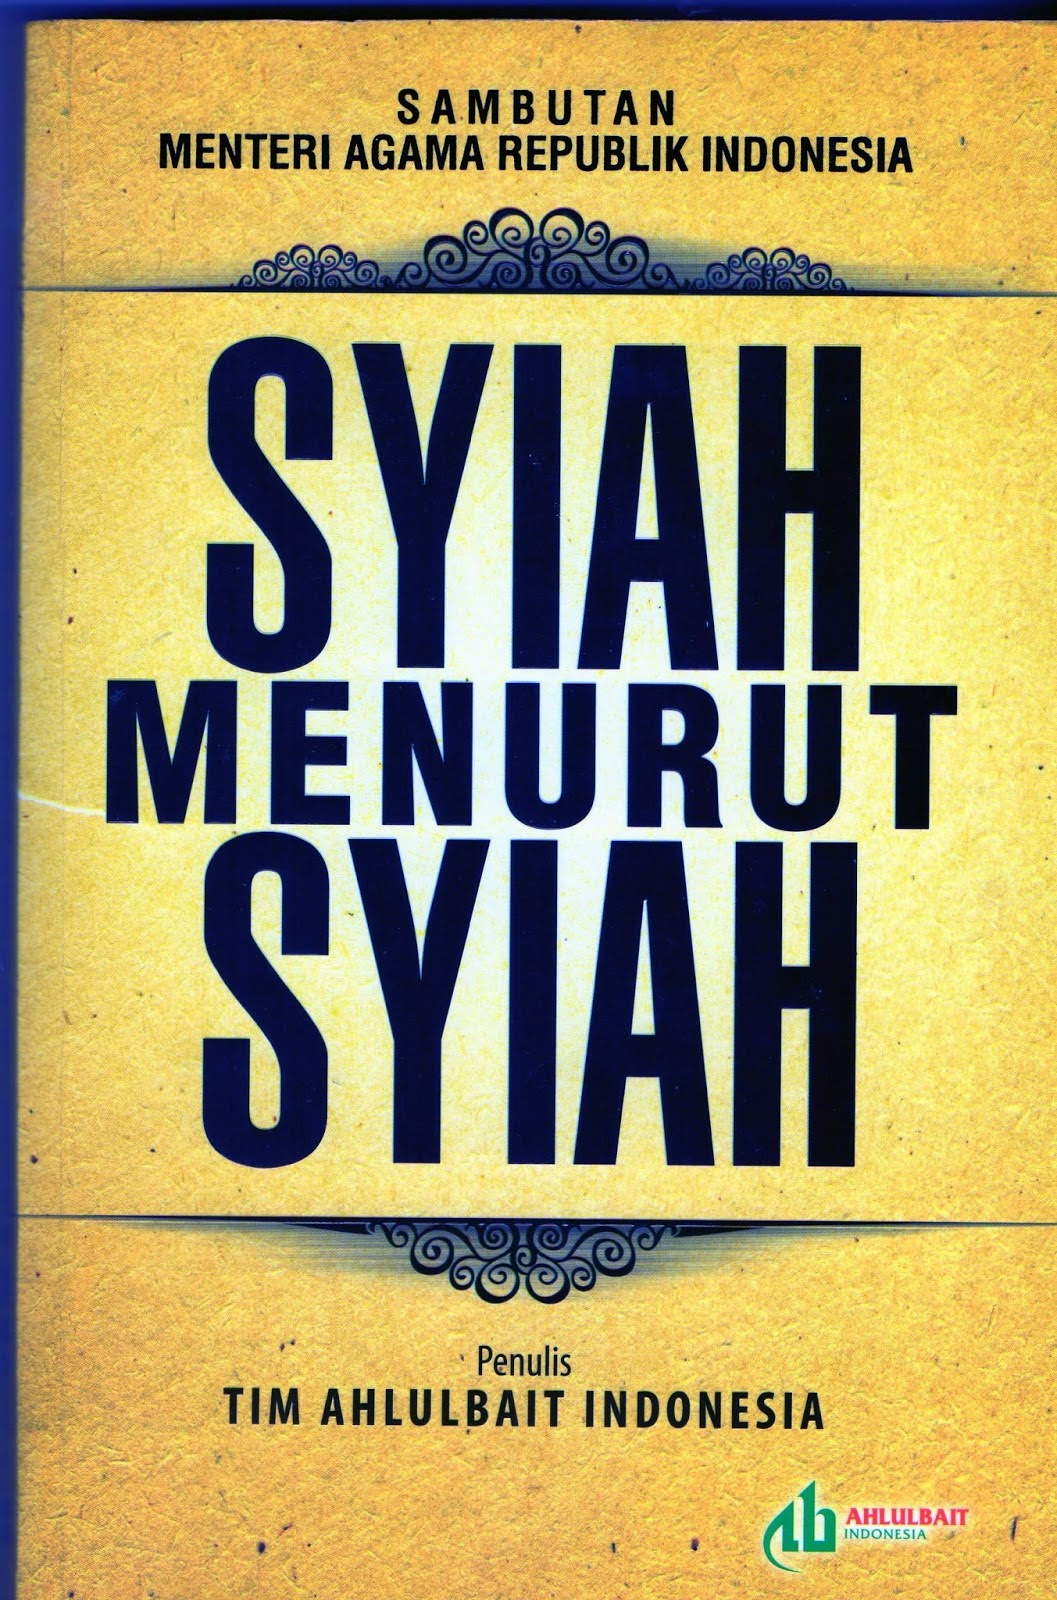 Buku "Syiah Menurut Syiah" Membongkar Semua Kesesatan Syiah di Indonesia